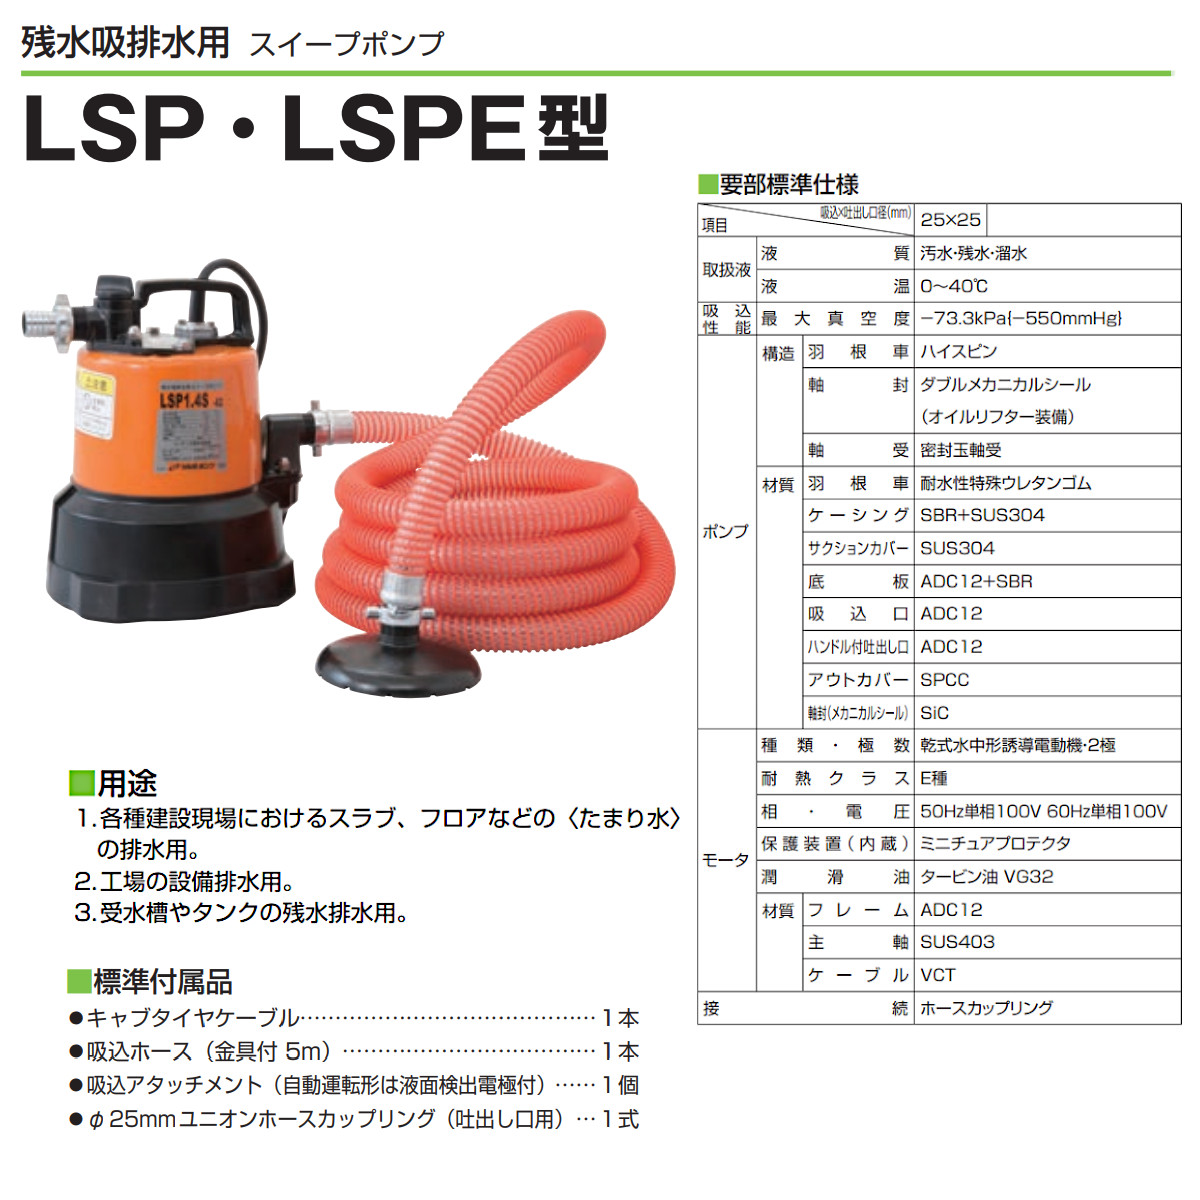 ツルミ 残水吸排水用 水中ポンプ LSP1.4S 単相100V 50Hz/60Hz 低水位用 